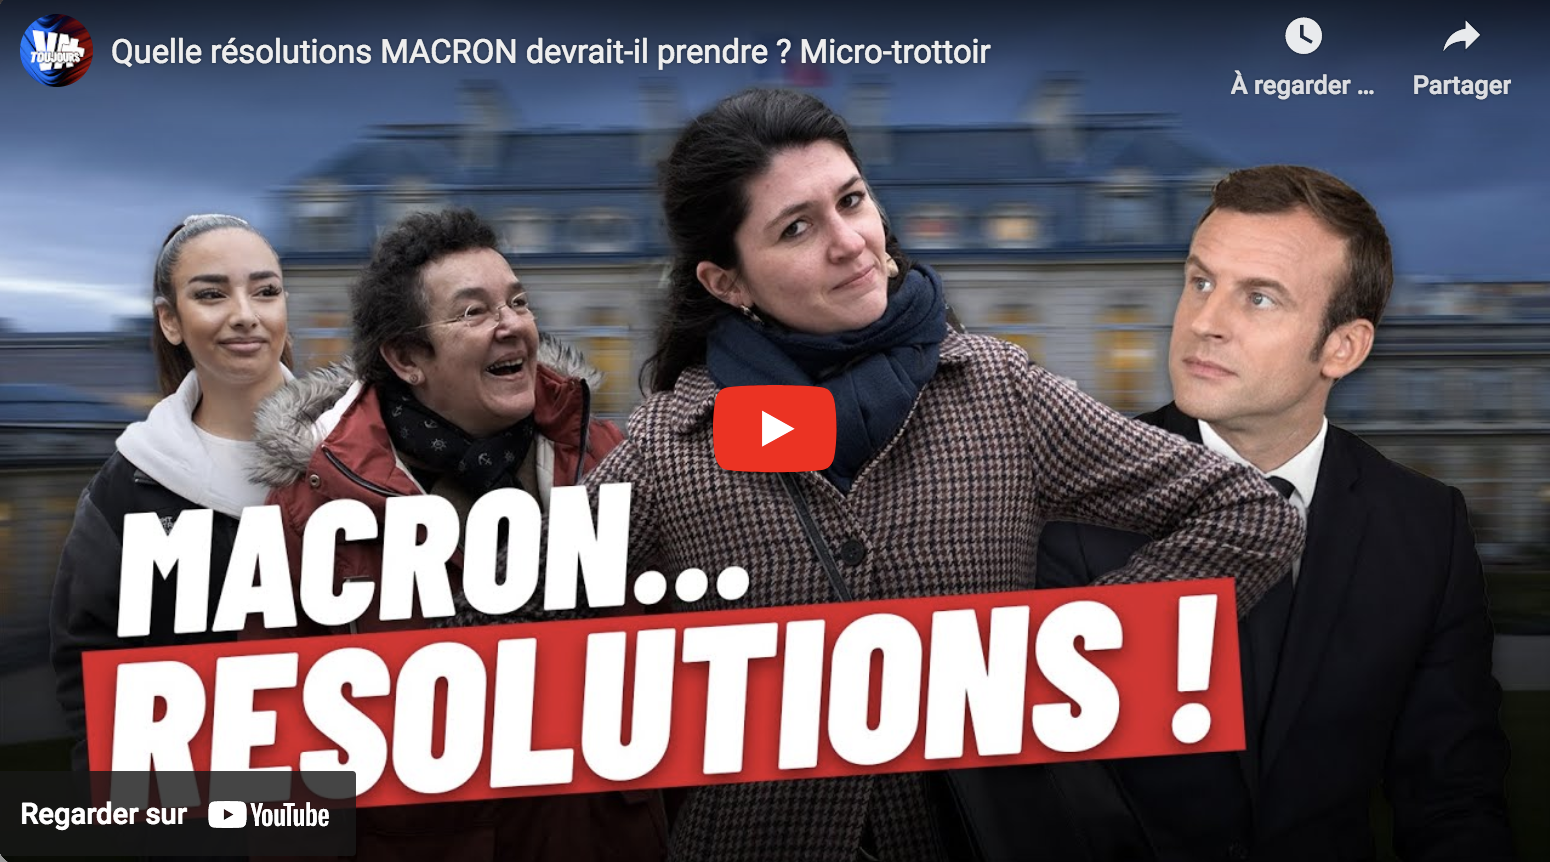 Quelles résolutions Emmanuel Macron devrait-il prendre ? (MICRO-TROTTOIR)